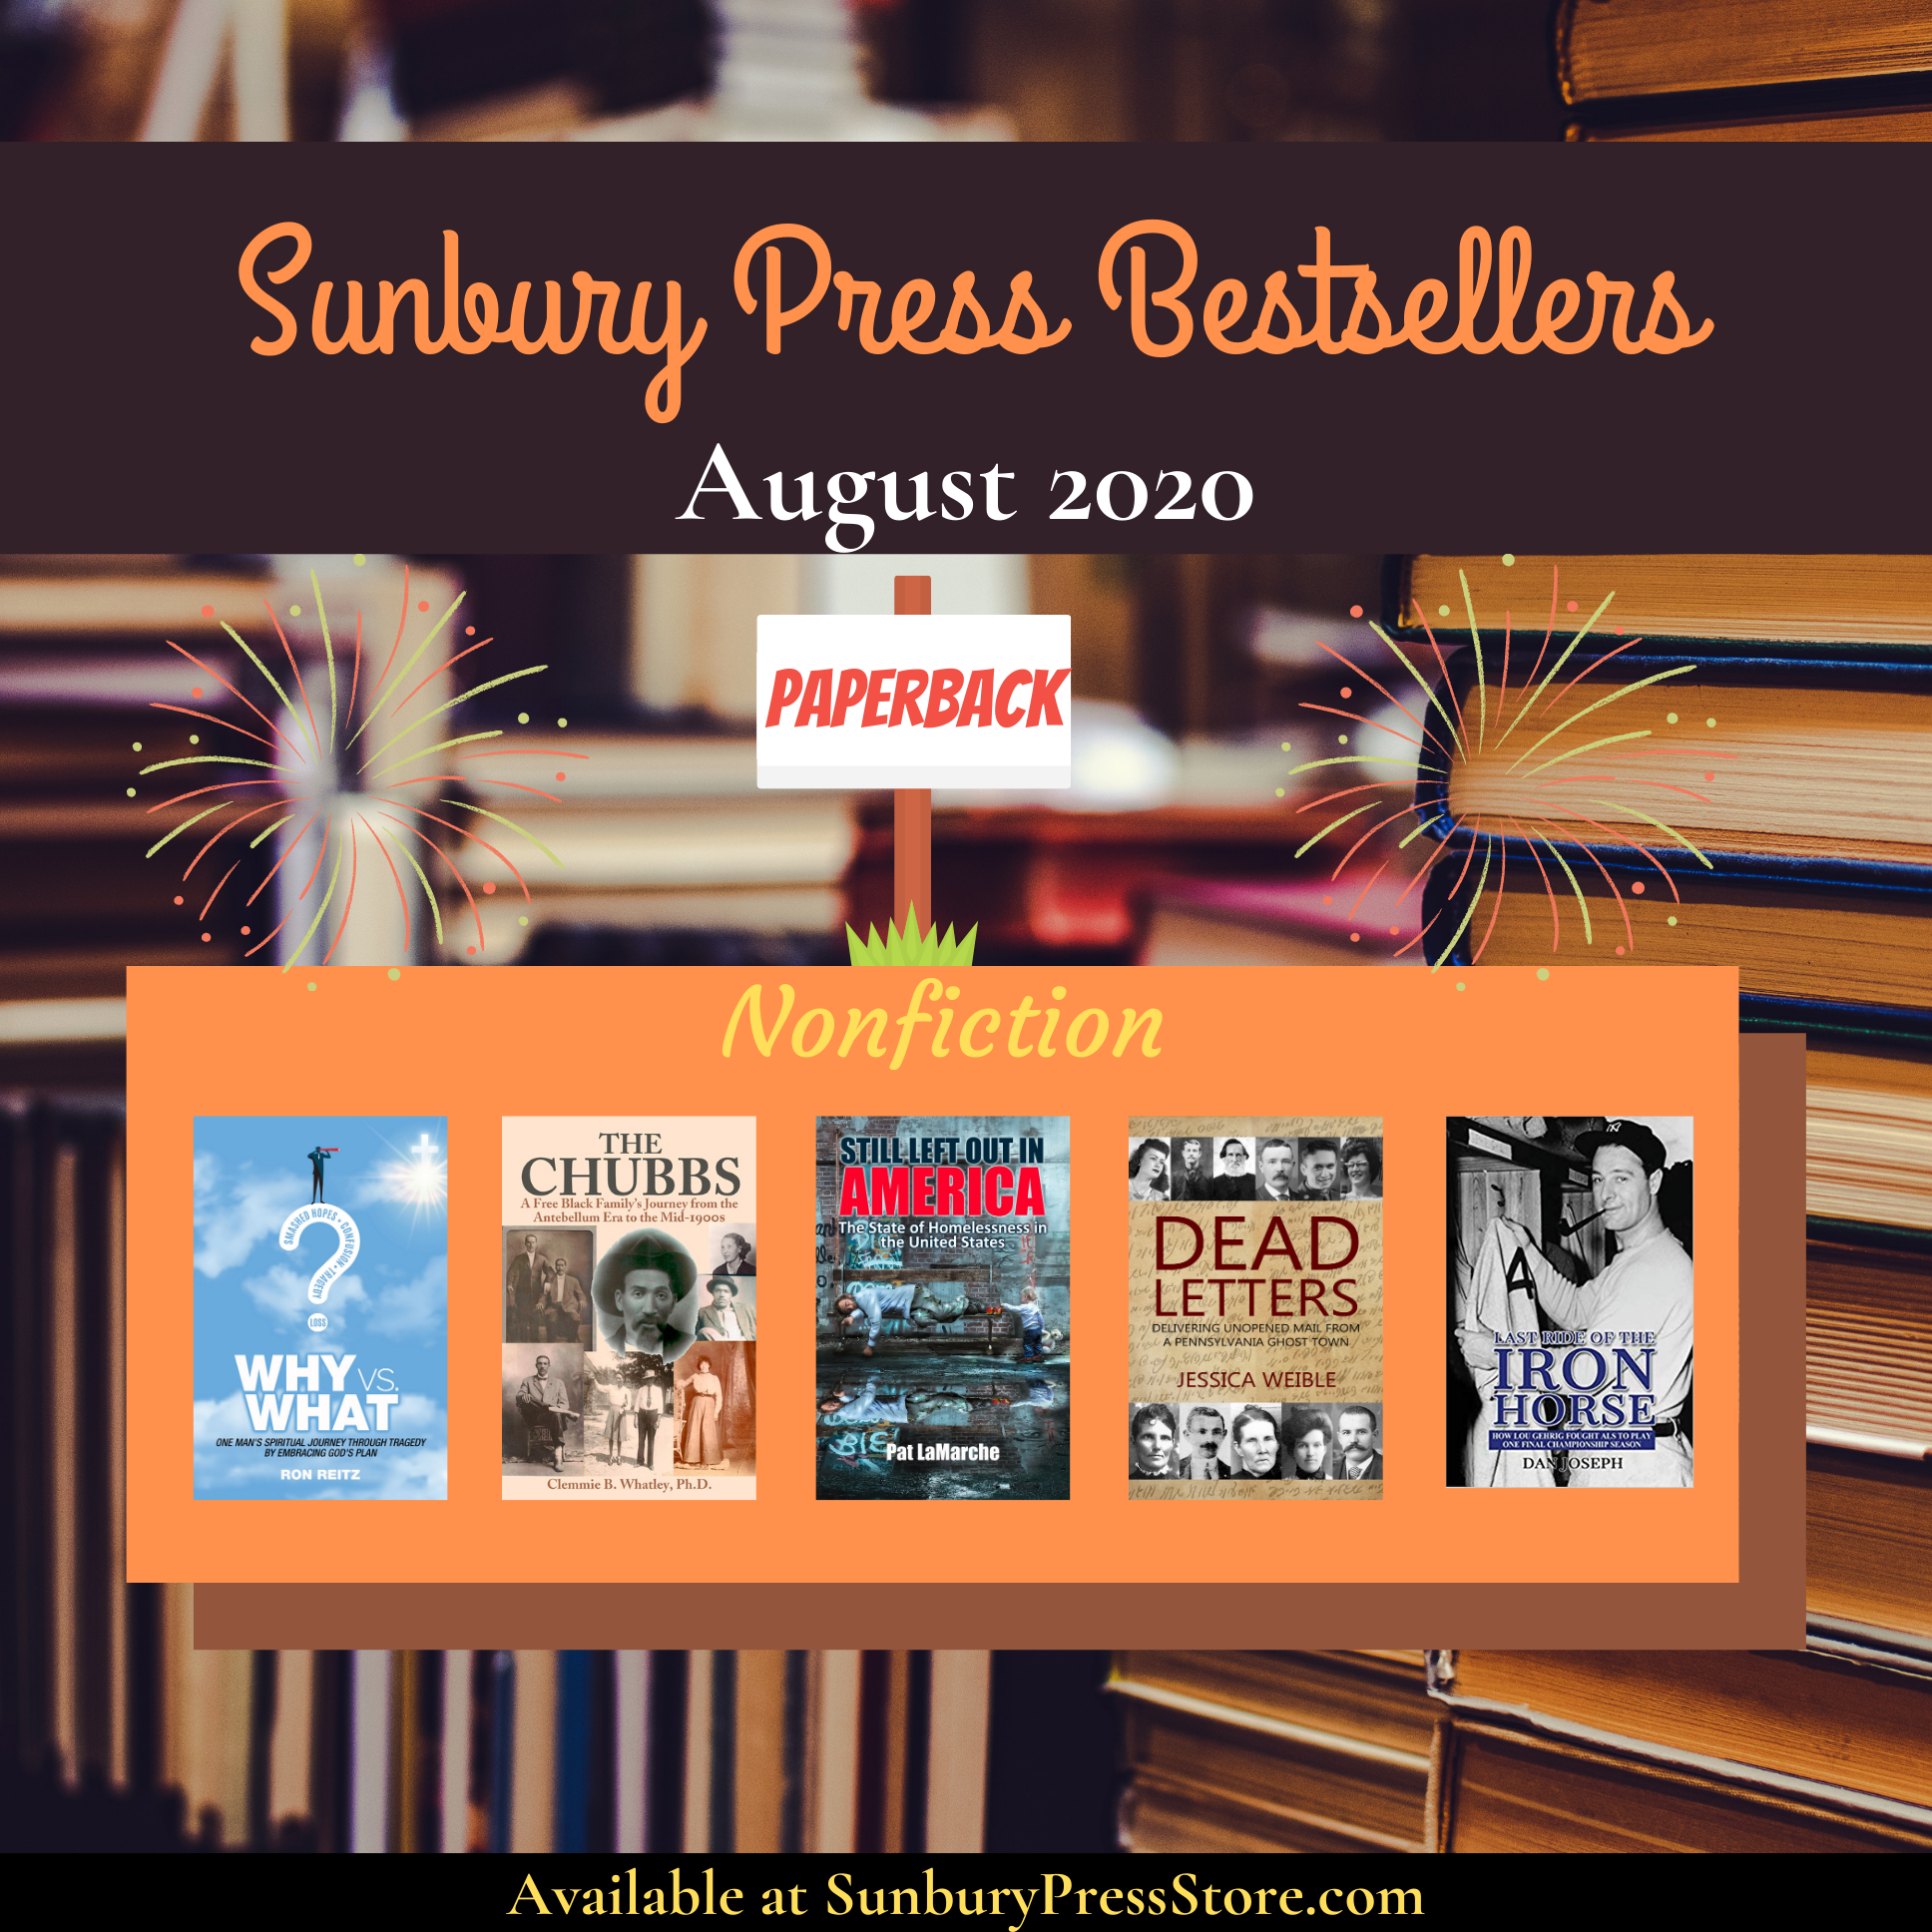 Sunbury Press Bestsellers: The Bestselling Print Books of August 2020